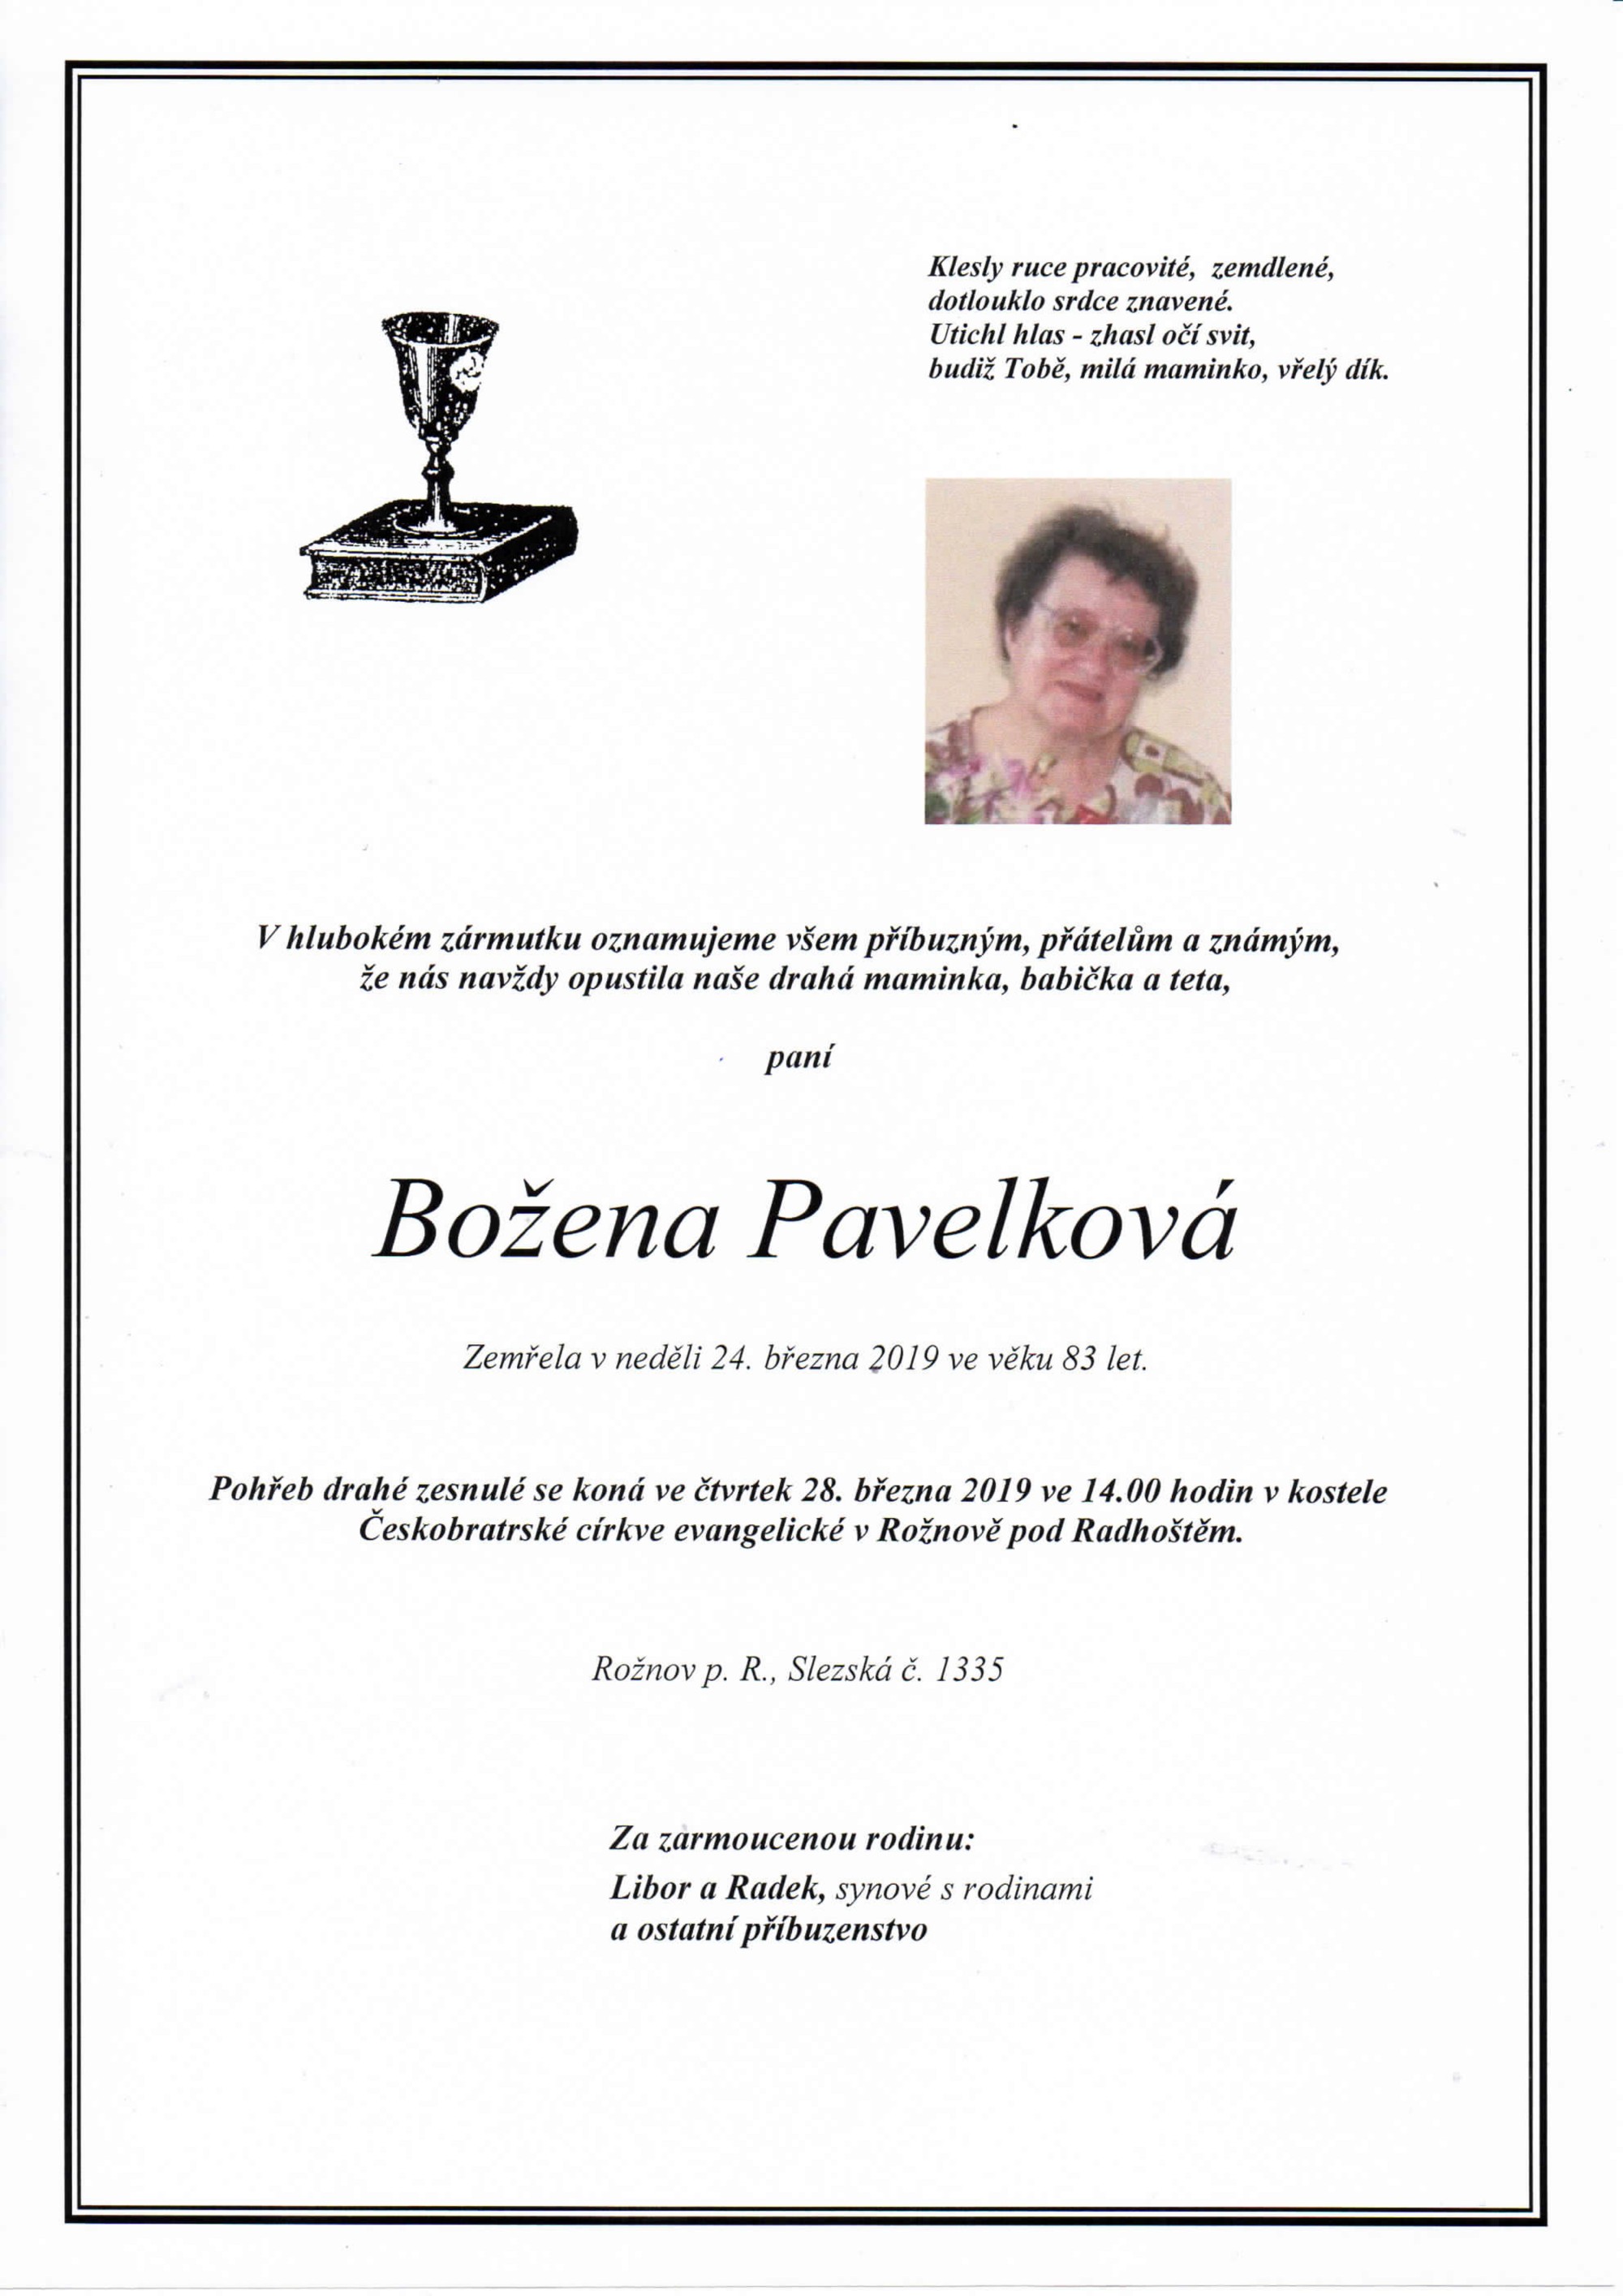 Božena Pavelková